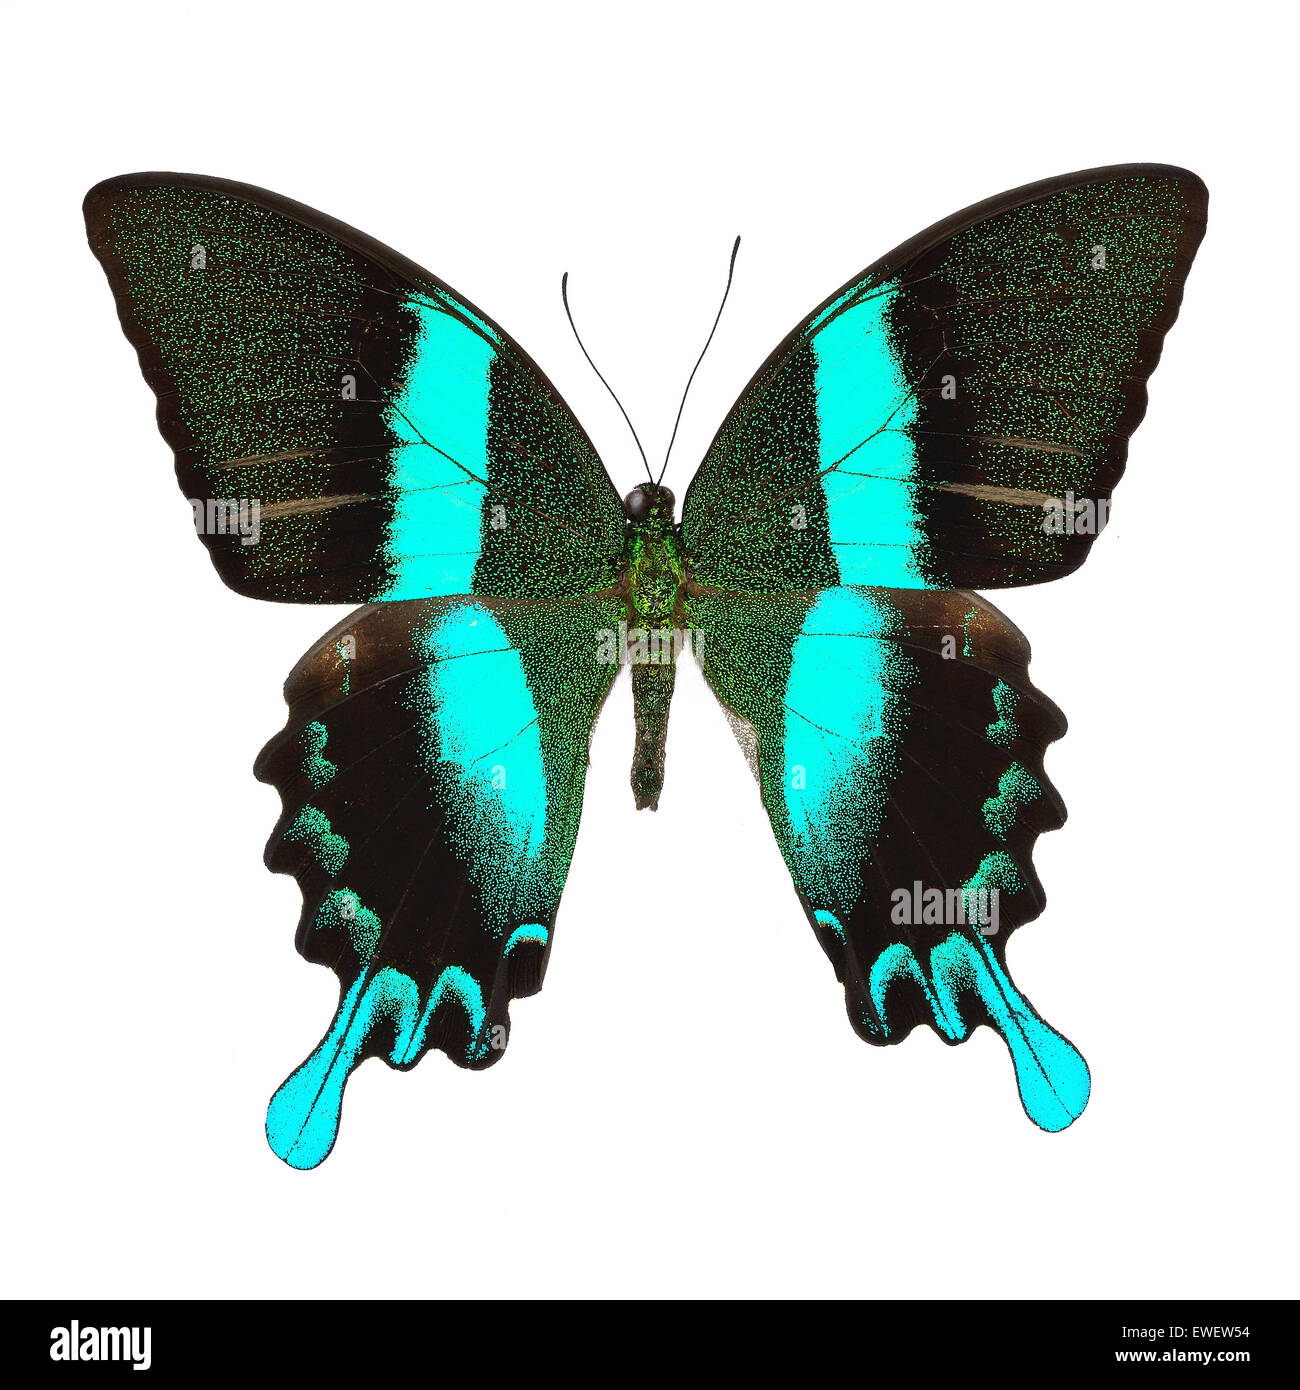 Bella blu e verde butterfly, maestose e verdi a coda di rondine (Papilio blumei), isolati su sfondo bianco Foto Stock